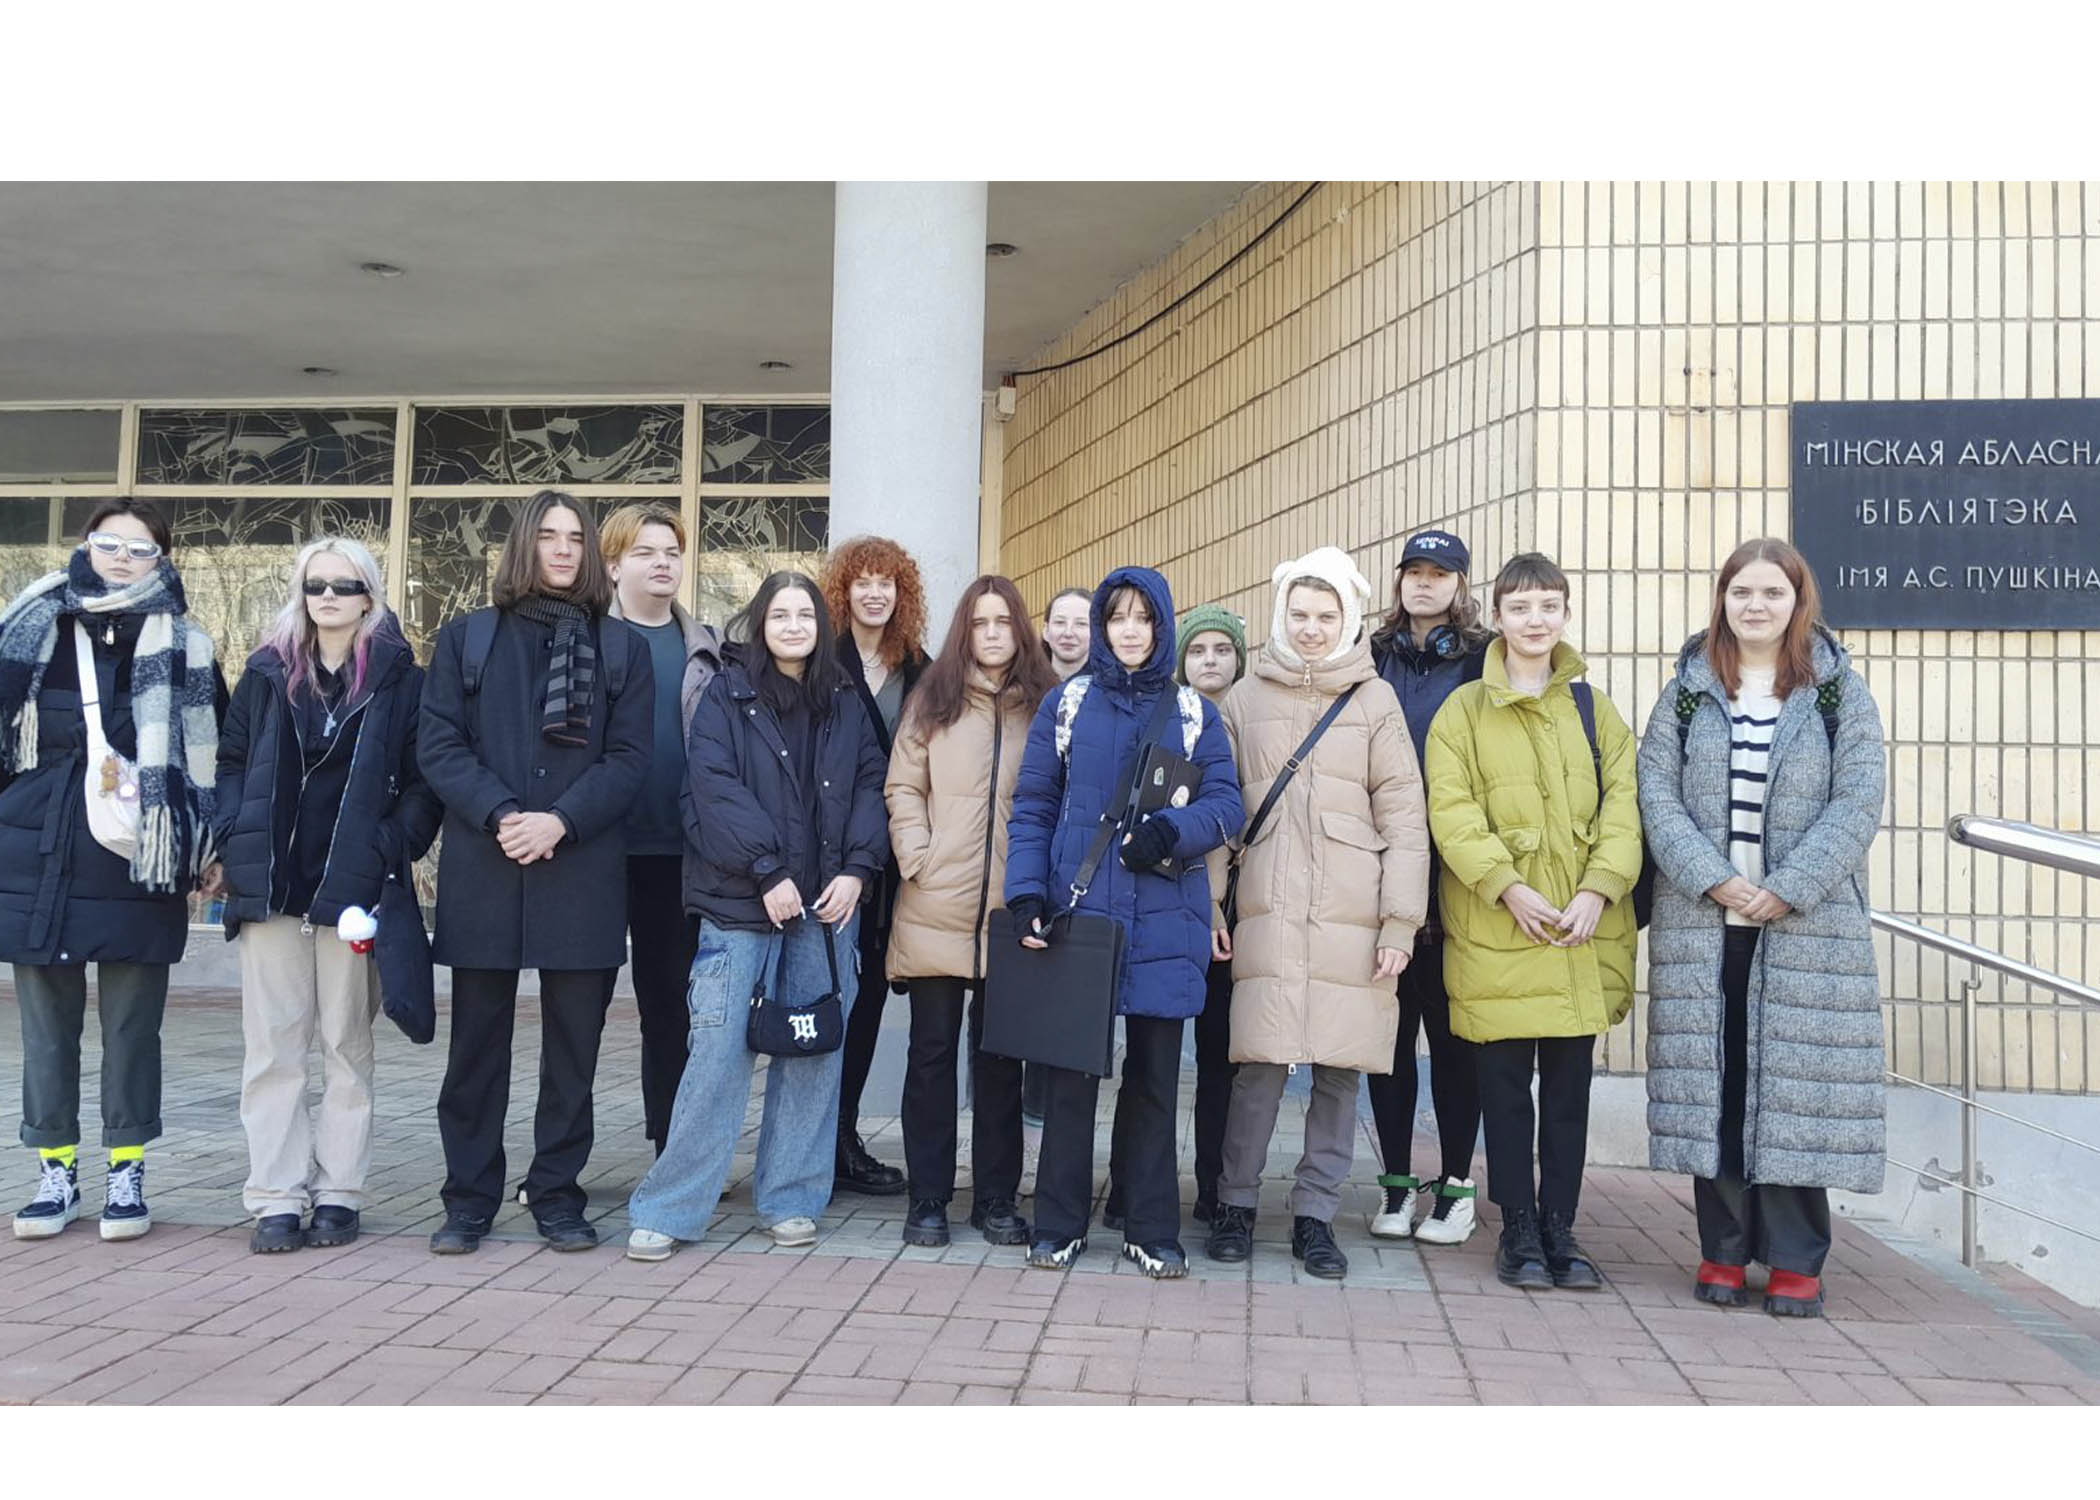 Группа 34 посетила в Минской областной библиотеке им. А С. Пушкина Международную выставку изобразительного искусства "Вечная женственность"